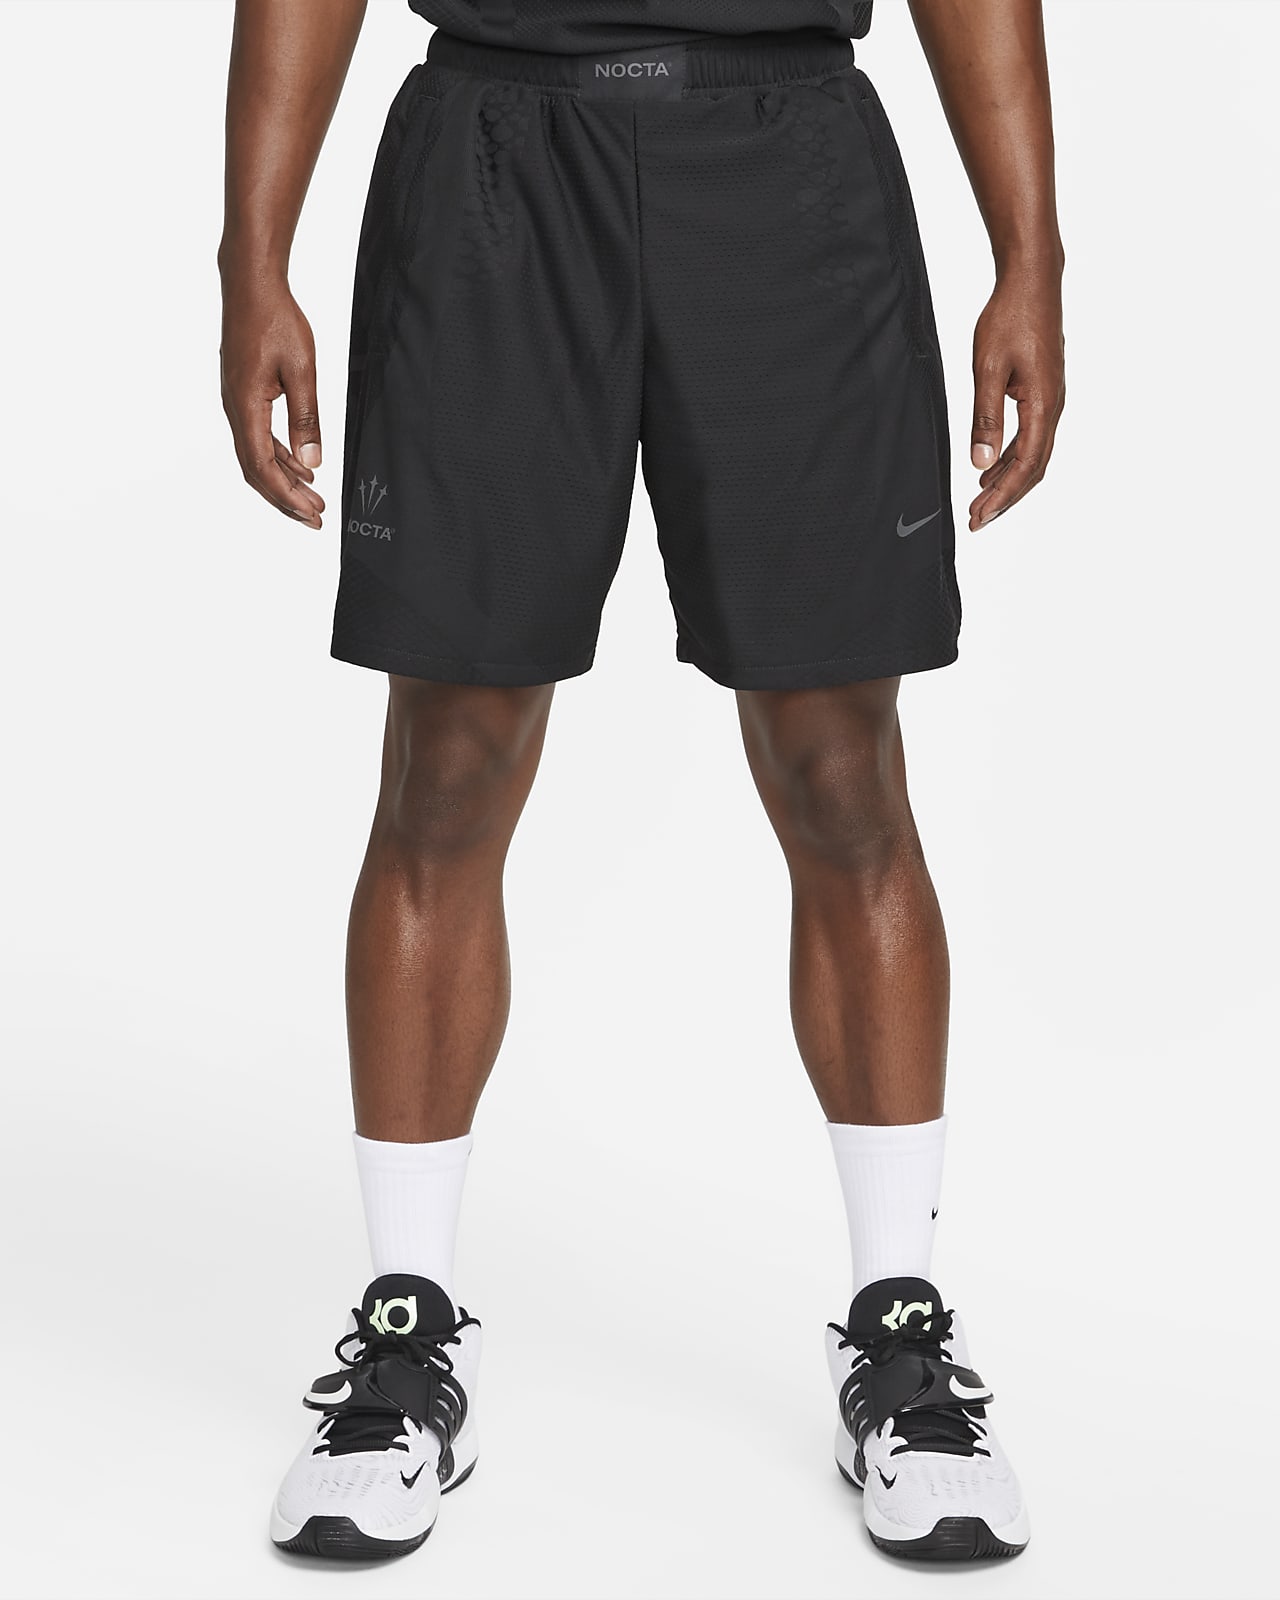 【格安好評】Sサイズ Nike x Drake NOCTA ショートパンツ パンツ